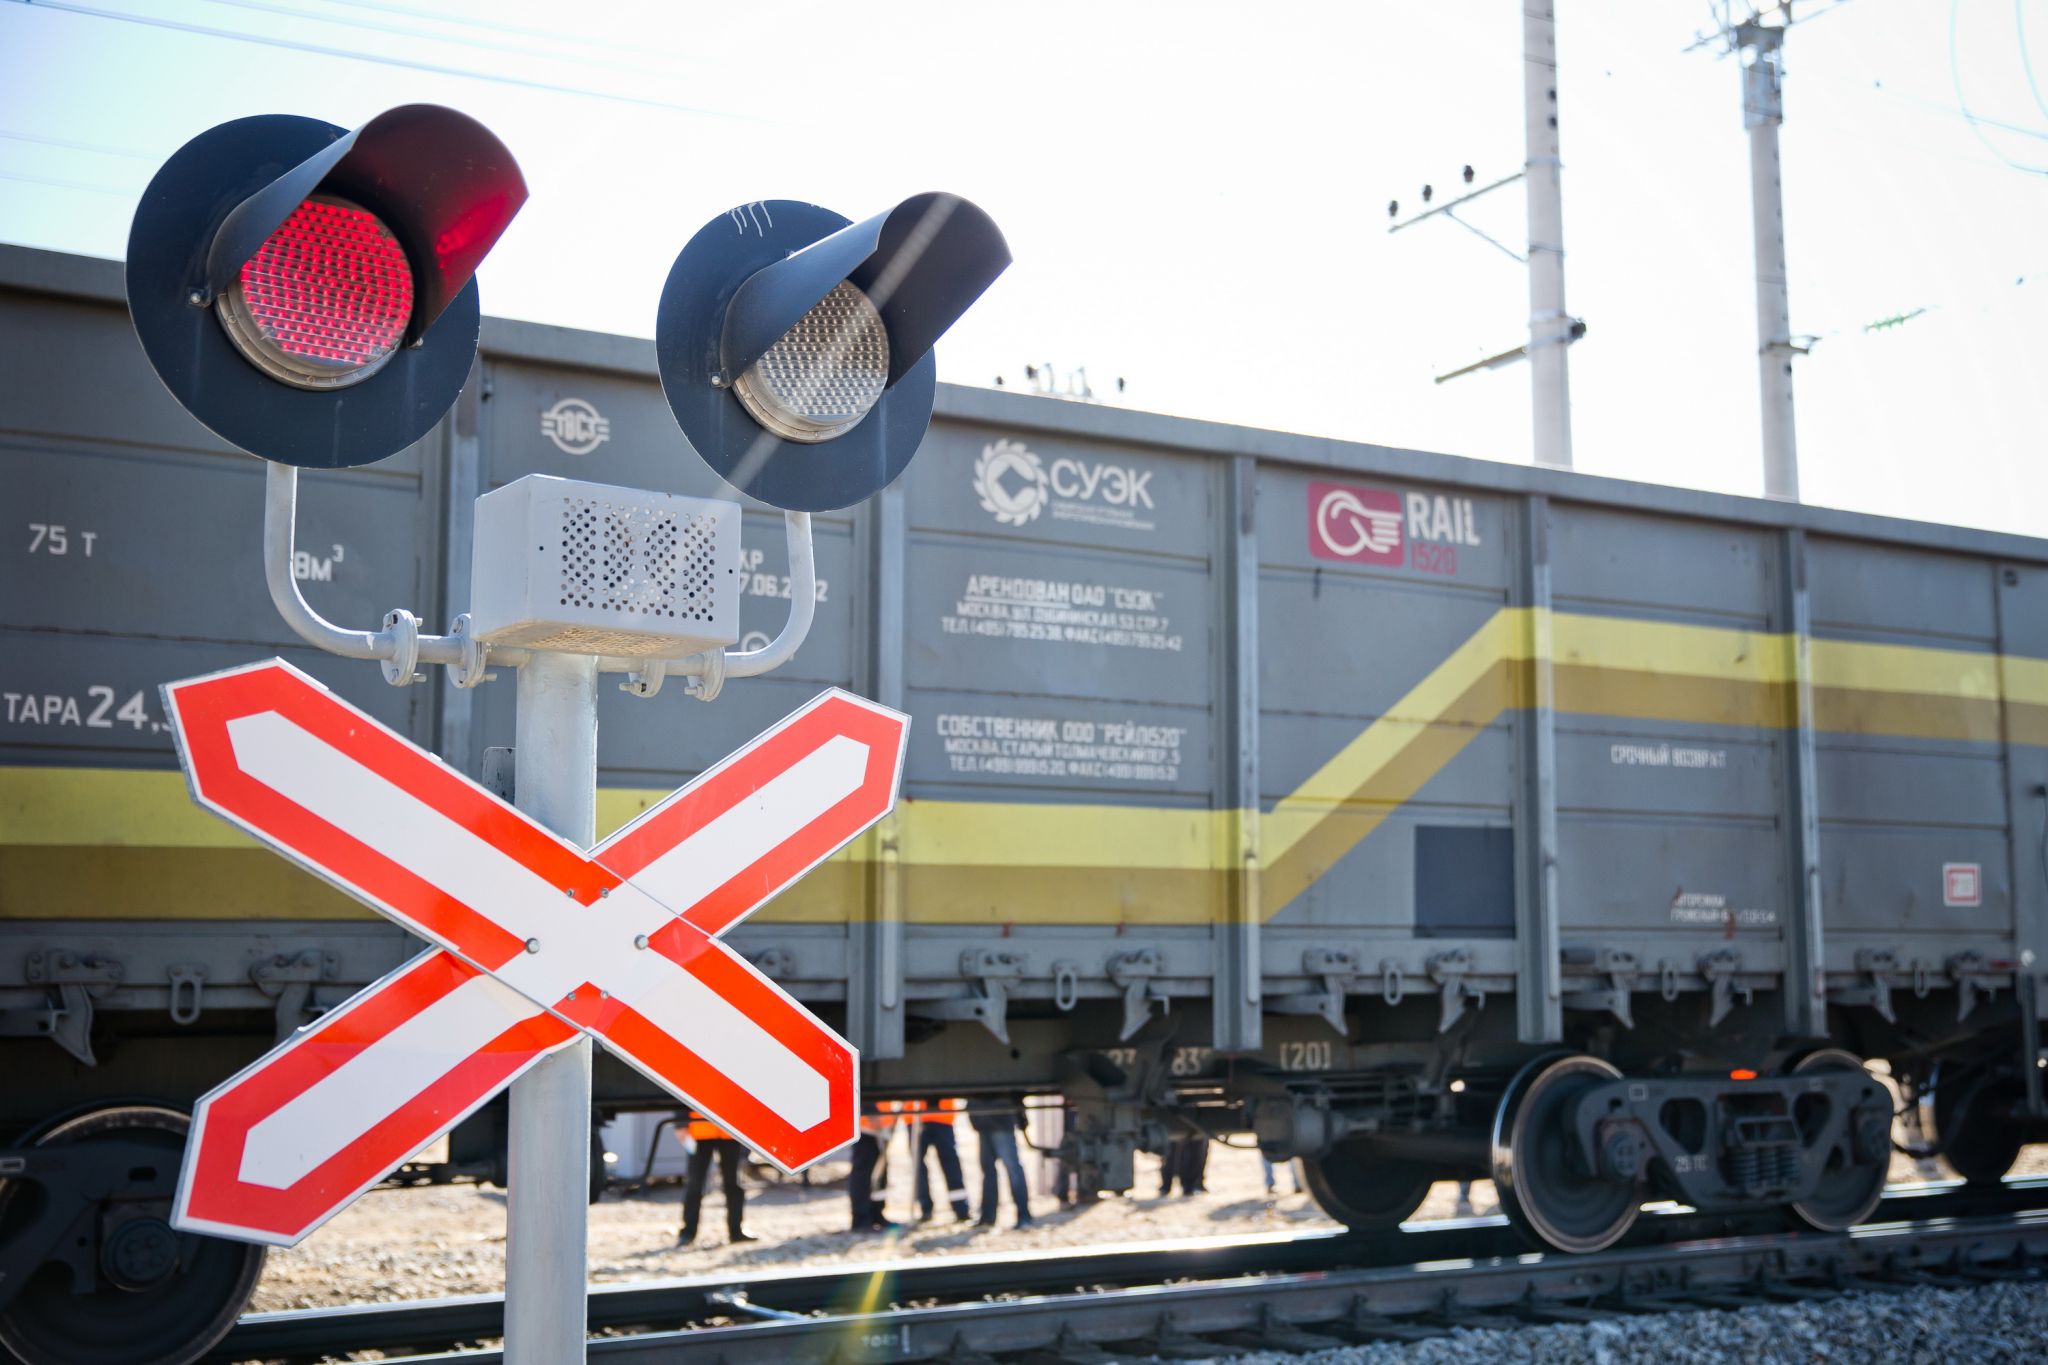 Выезд автомобиля на пути перед приближающимся поездом стал причиной ДТП на станции Тыгда в Амурской области